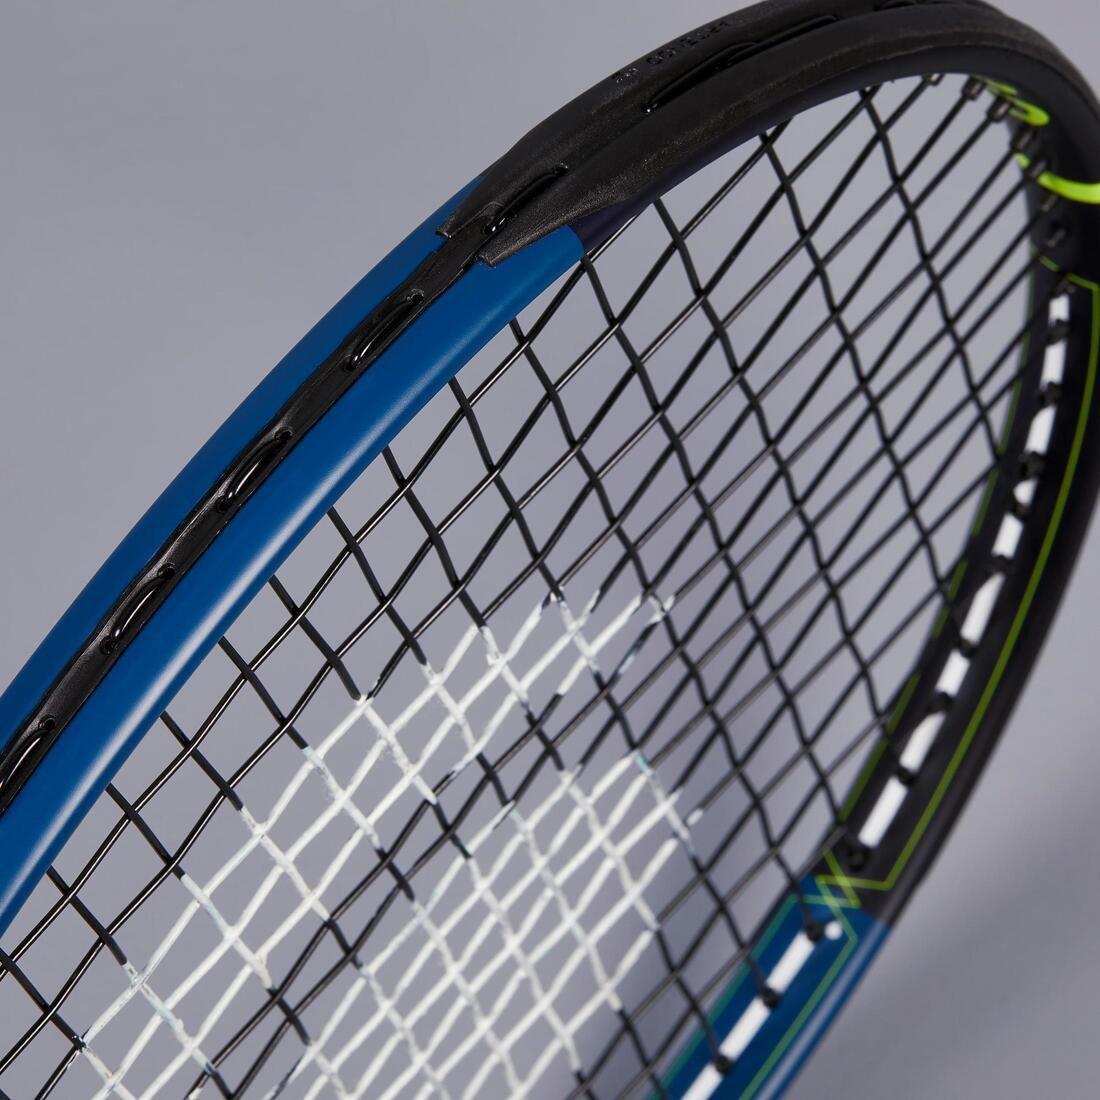 ARTENGO - Kids' 26 Tennis Racket TR530